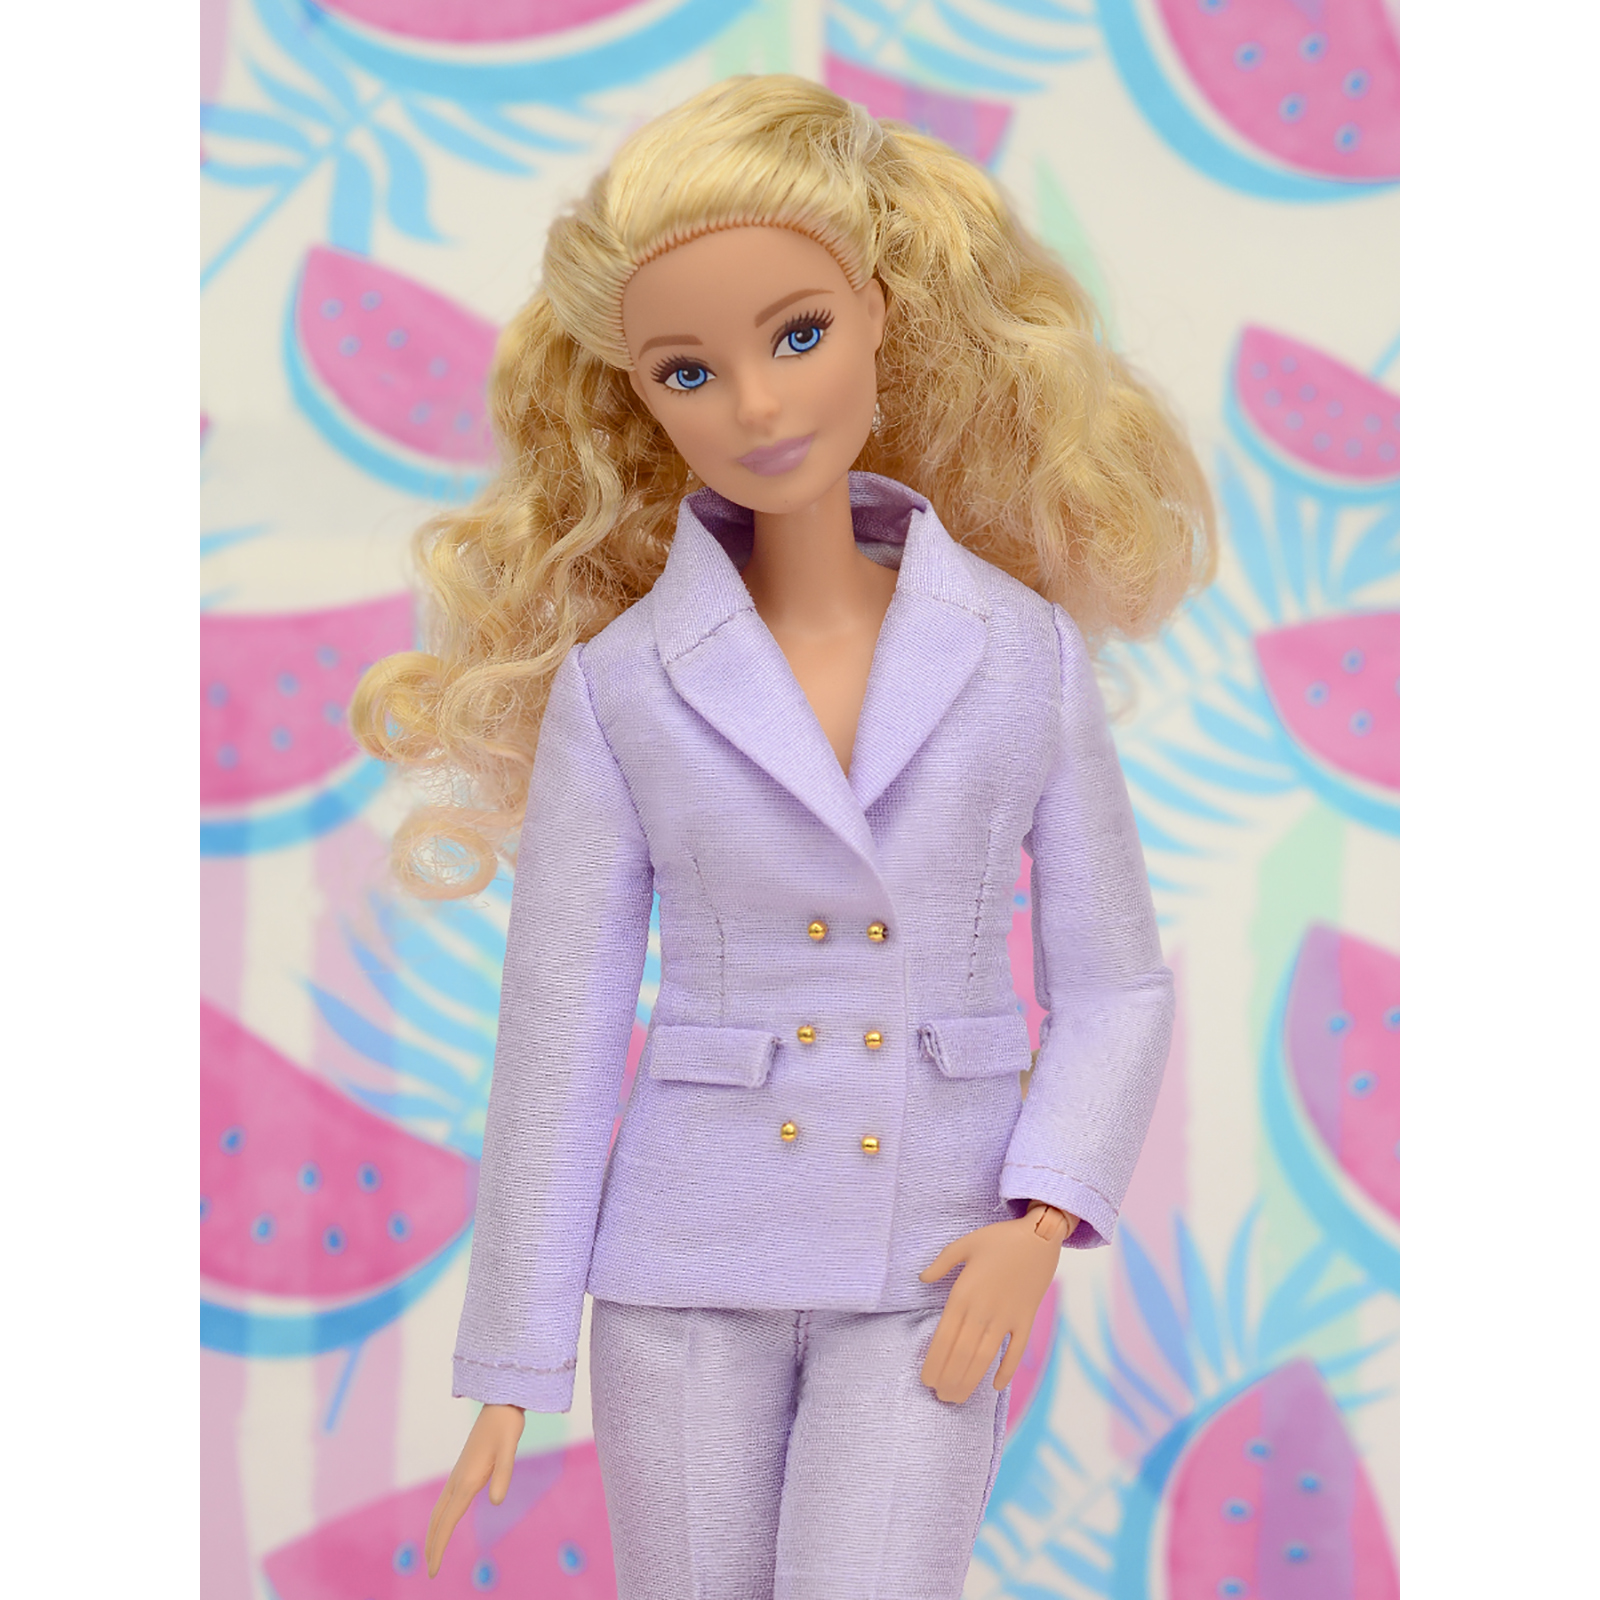 Шелковый брючный костюм Эленприв Фиолетовый для куклы 29 см типа Барби FA-011-11 - фото 7